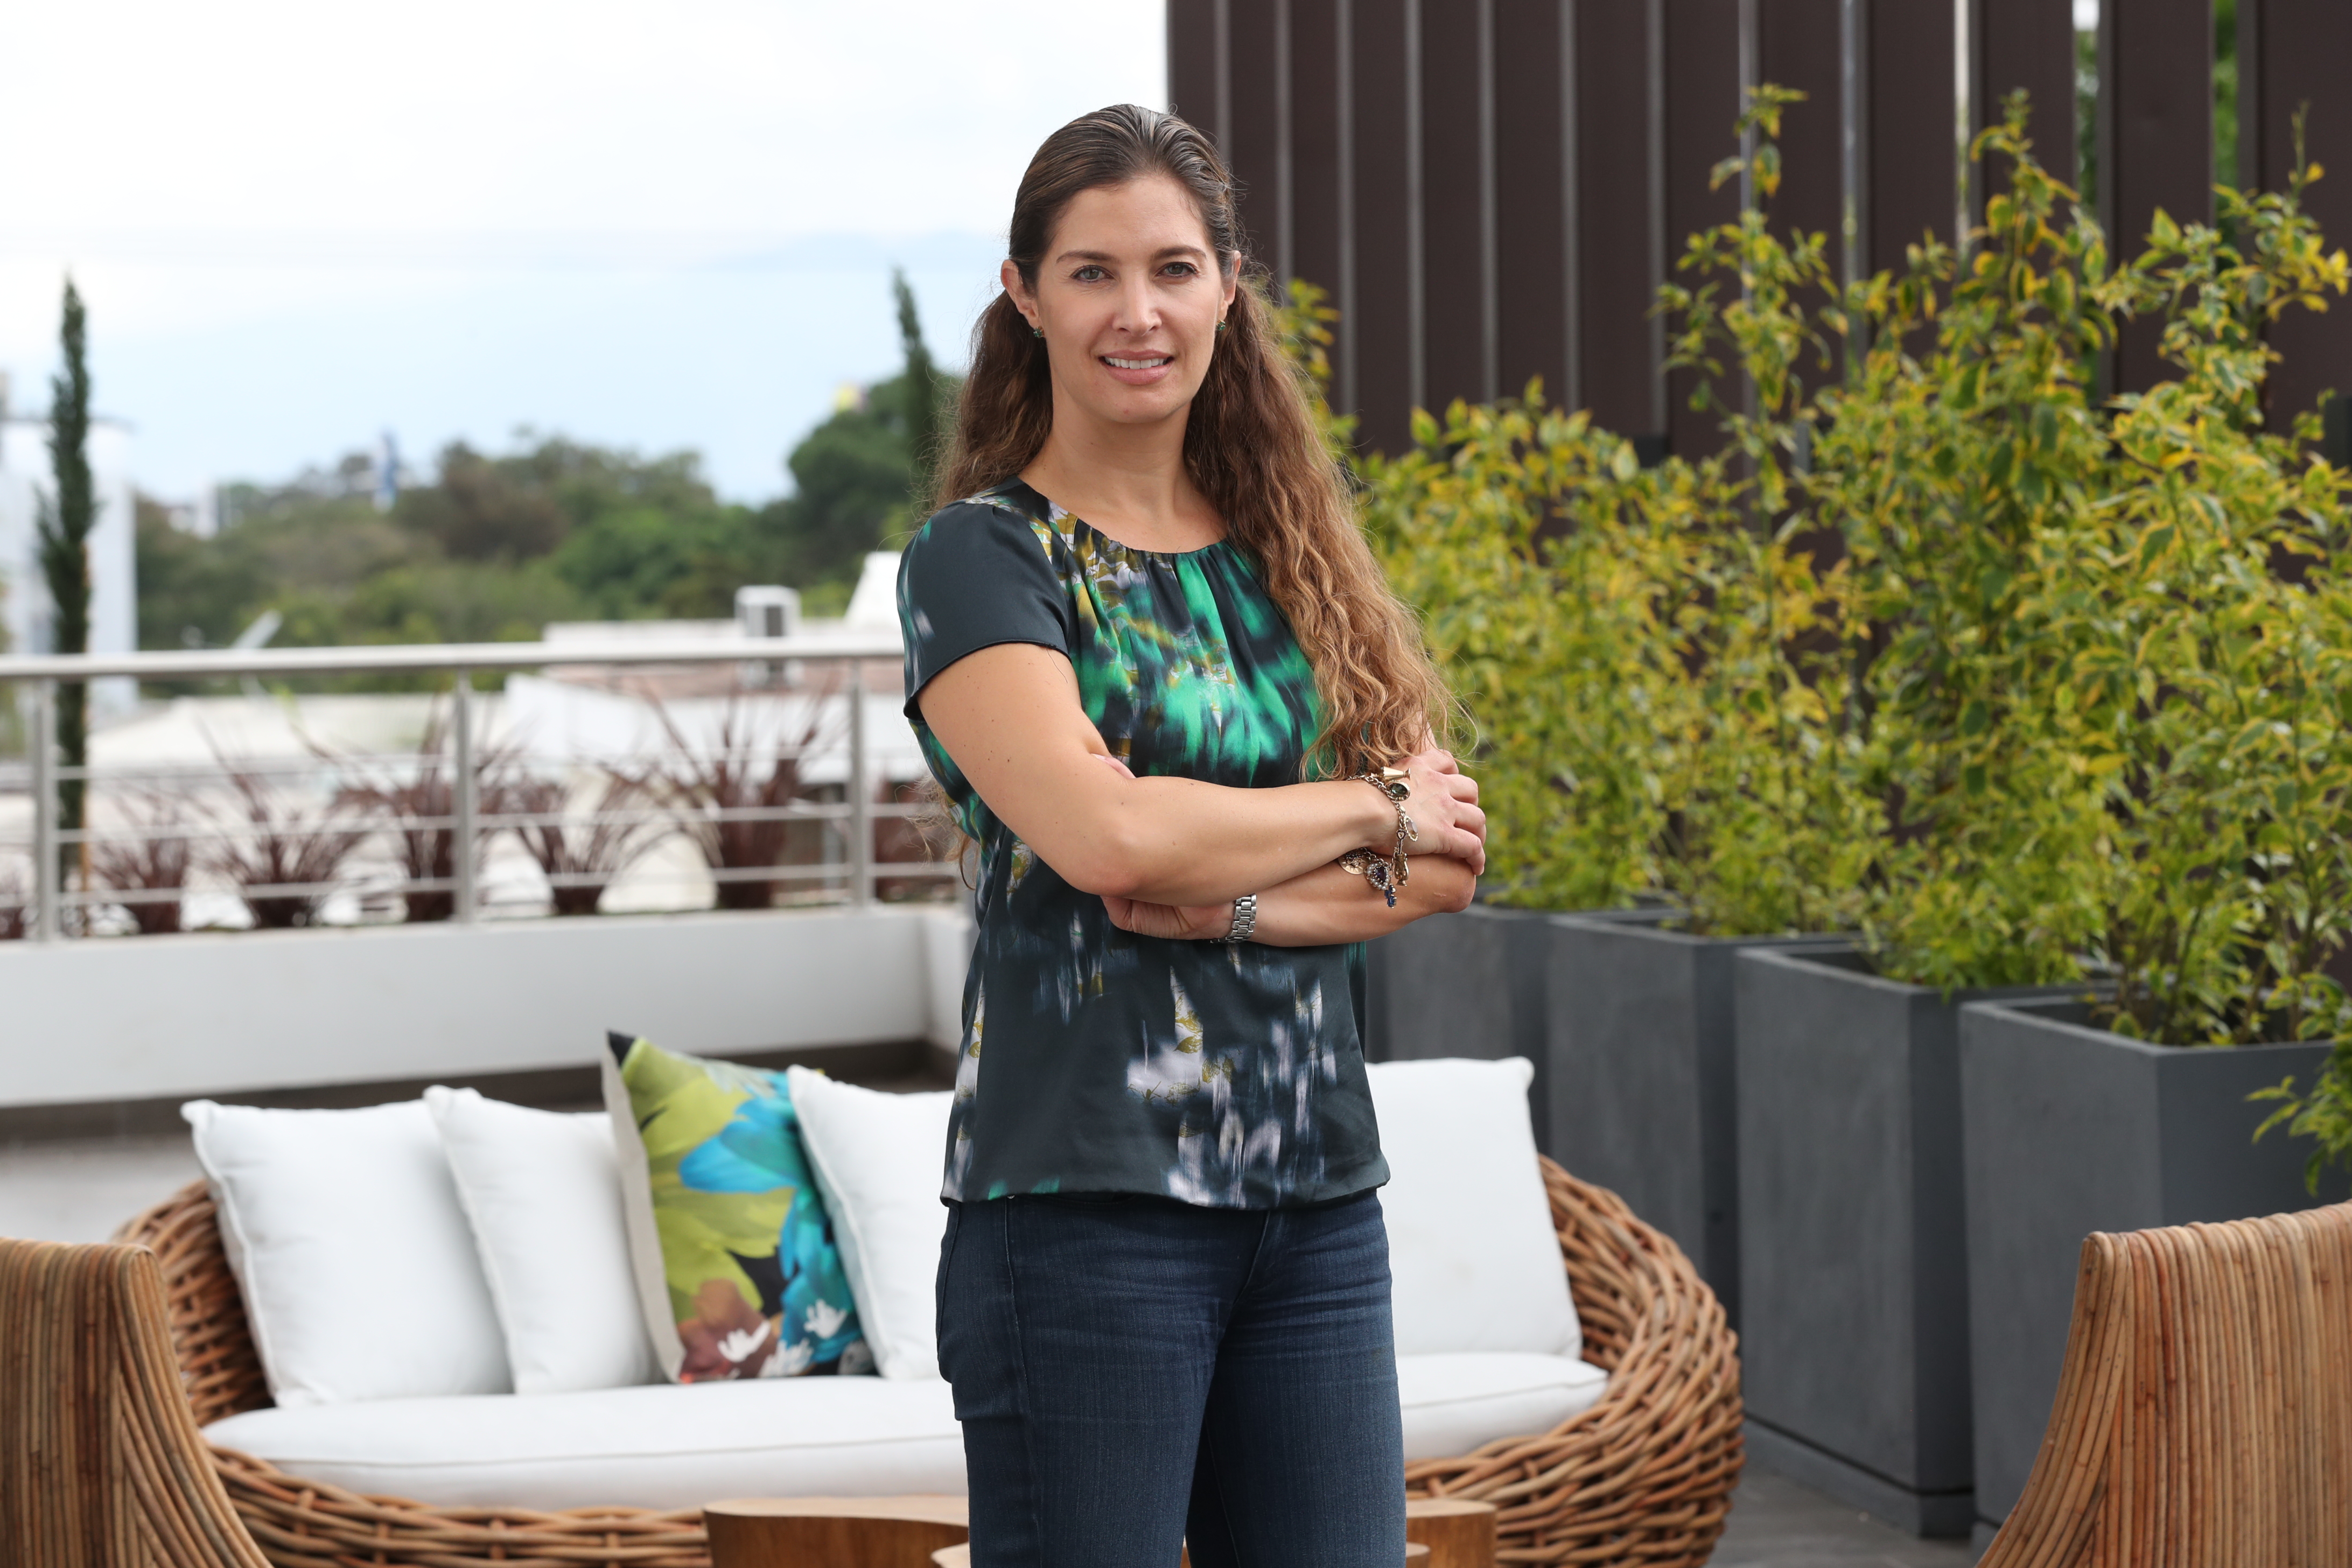 Jaqueline Sherman, directora comercial de Ubica Desarrollos, comparte su visión sobre el papel de la mujer en el mundo inmobiliario y las claves que la han llevado a escalar en una empresa familiar. (Foto Prensa Libre: Raúl Juárez)